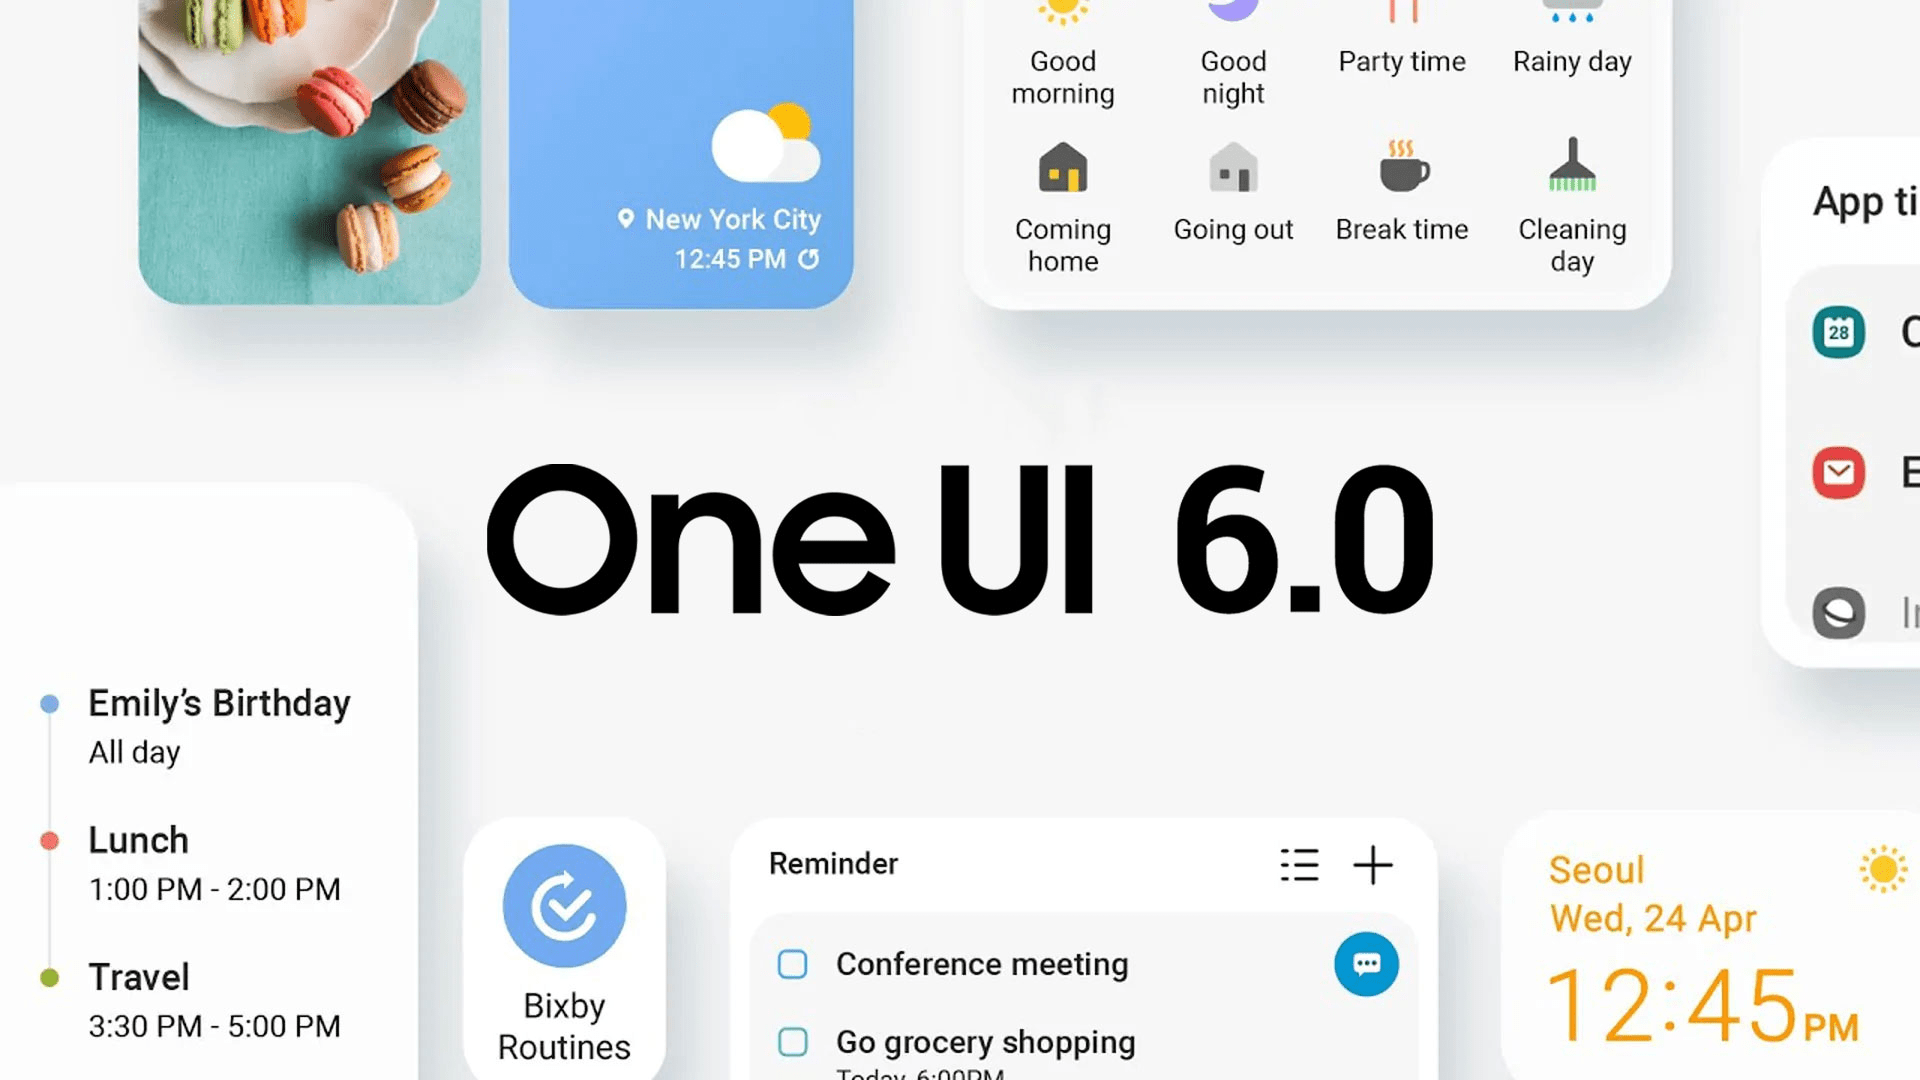 One UI 6.0: cosa aspettarsi e quali dispositivi lo riceveranno per primi